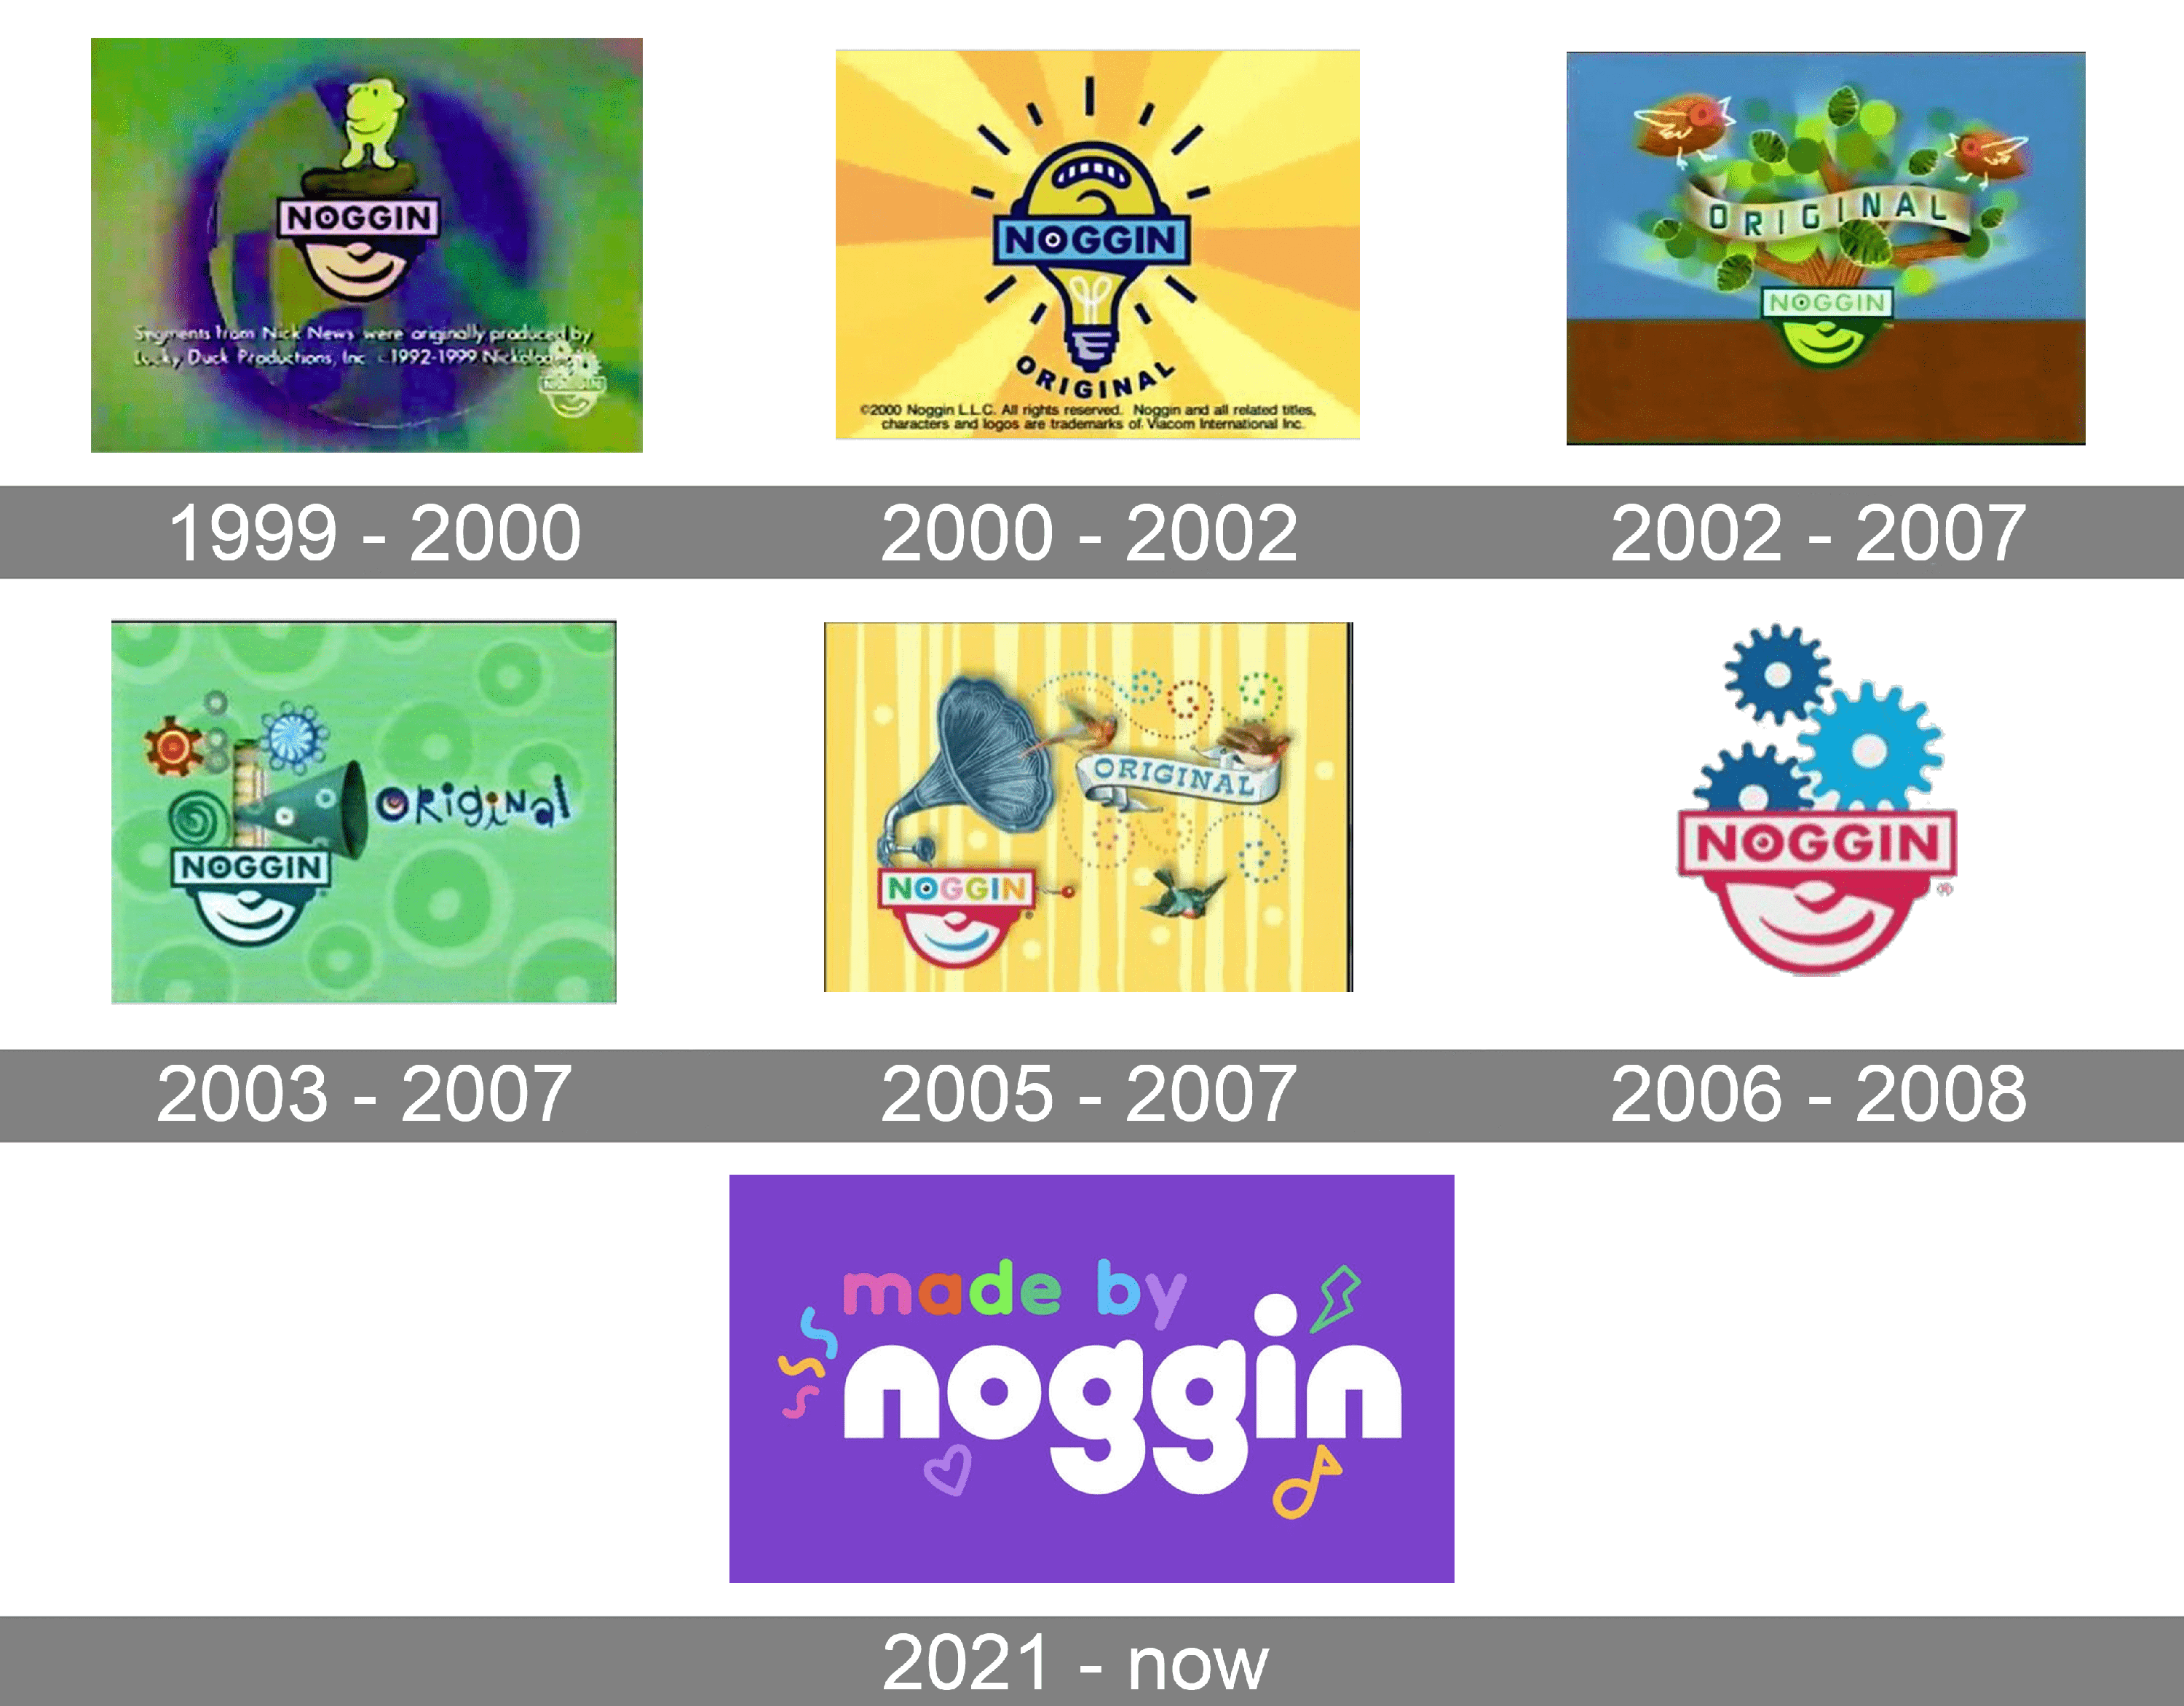 Nick Jr Noggin Logo